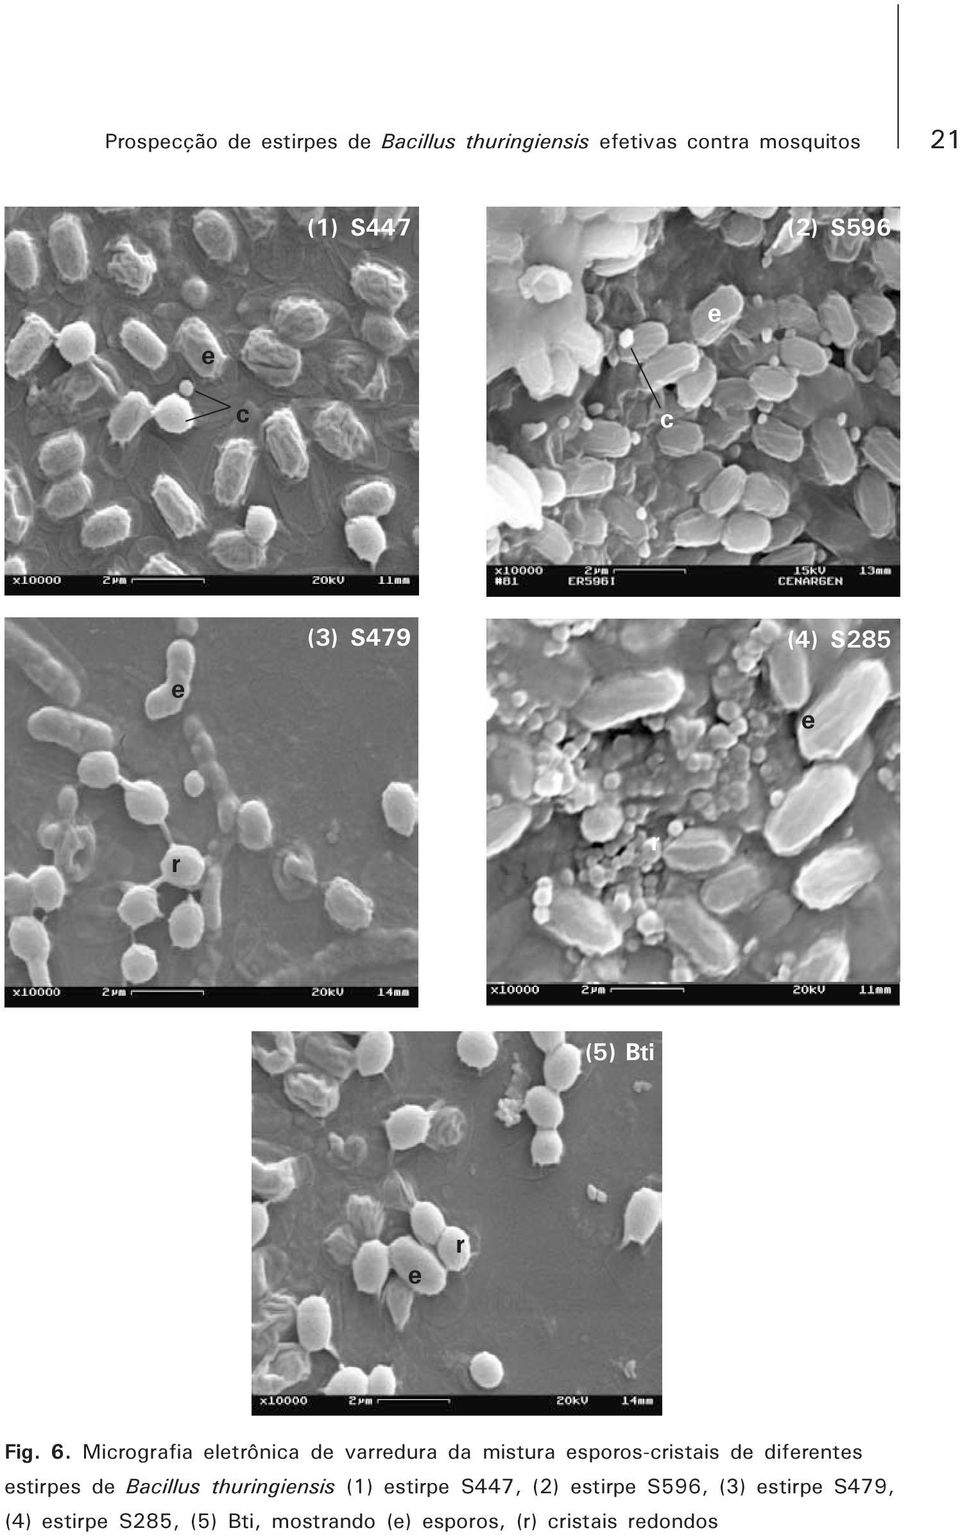 Micrografia eletrônica de varredura da mistura esporos-cristais de diferentes estirpes de